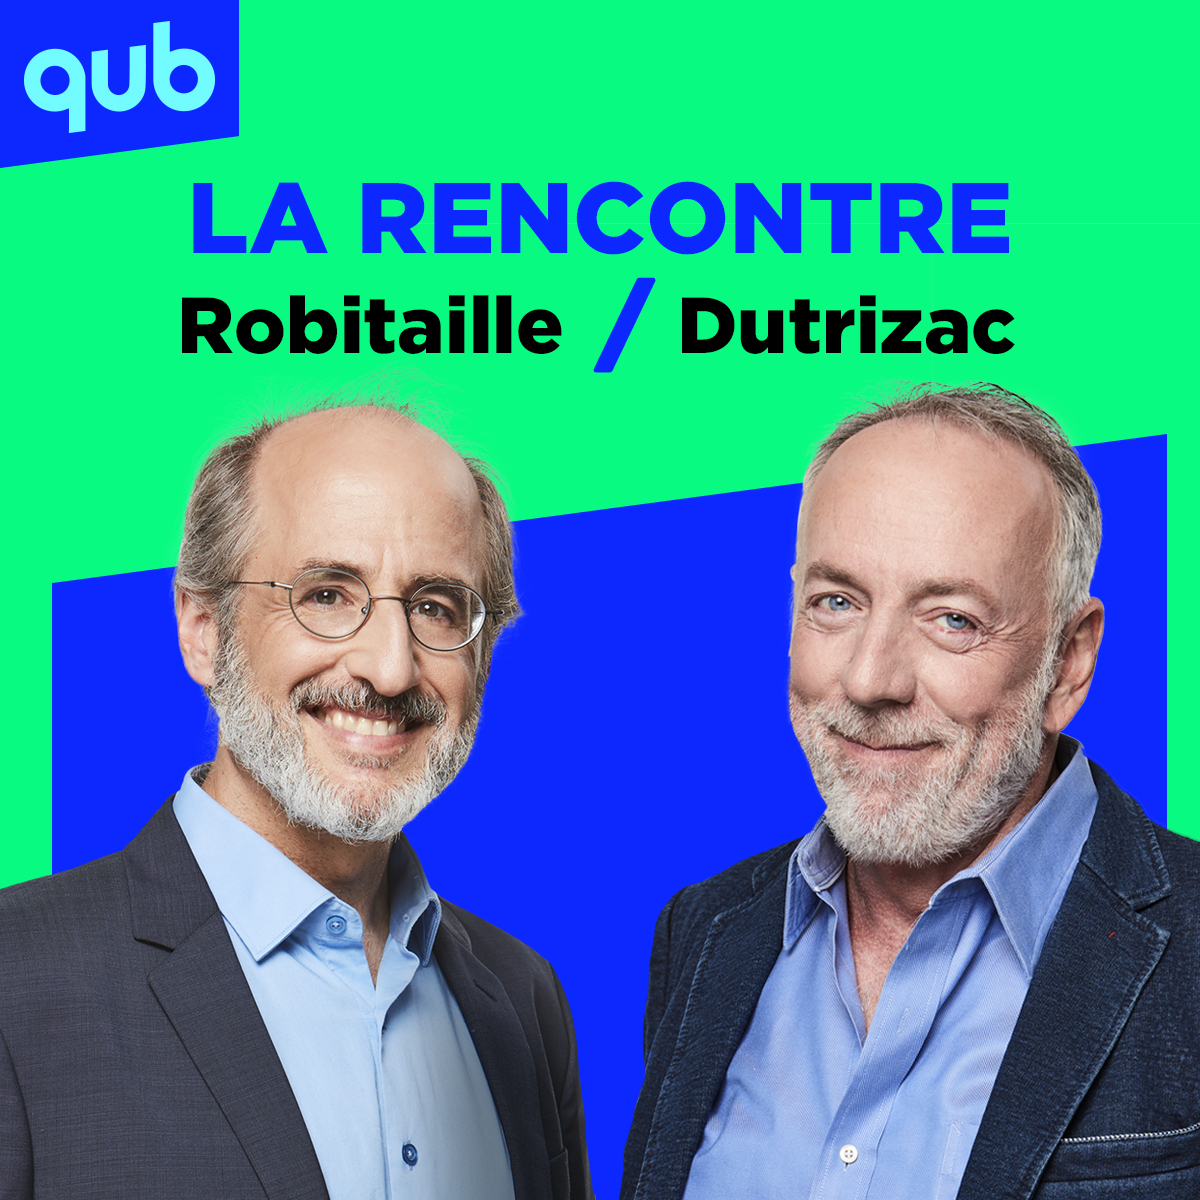 « On est suradministrés et surgouvernés », dit Antoine Robitaille